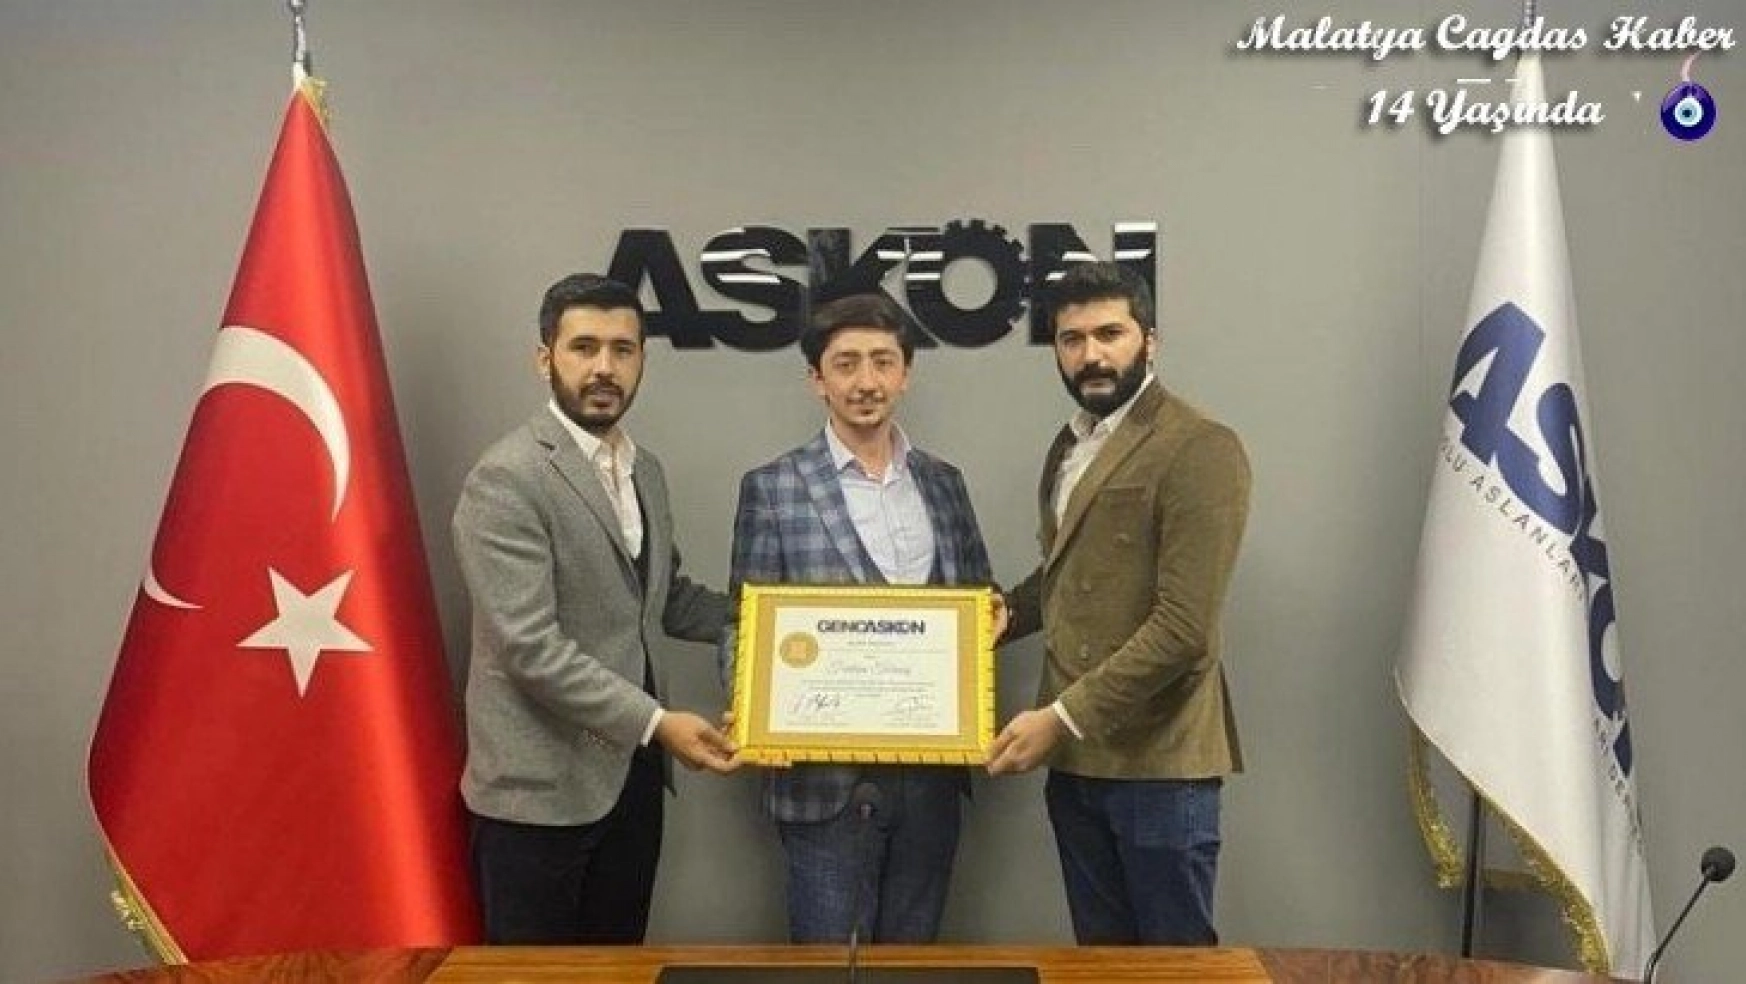 Turmuş, Genç ASKON Malatya il başkanlığına atandı